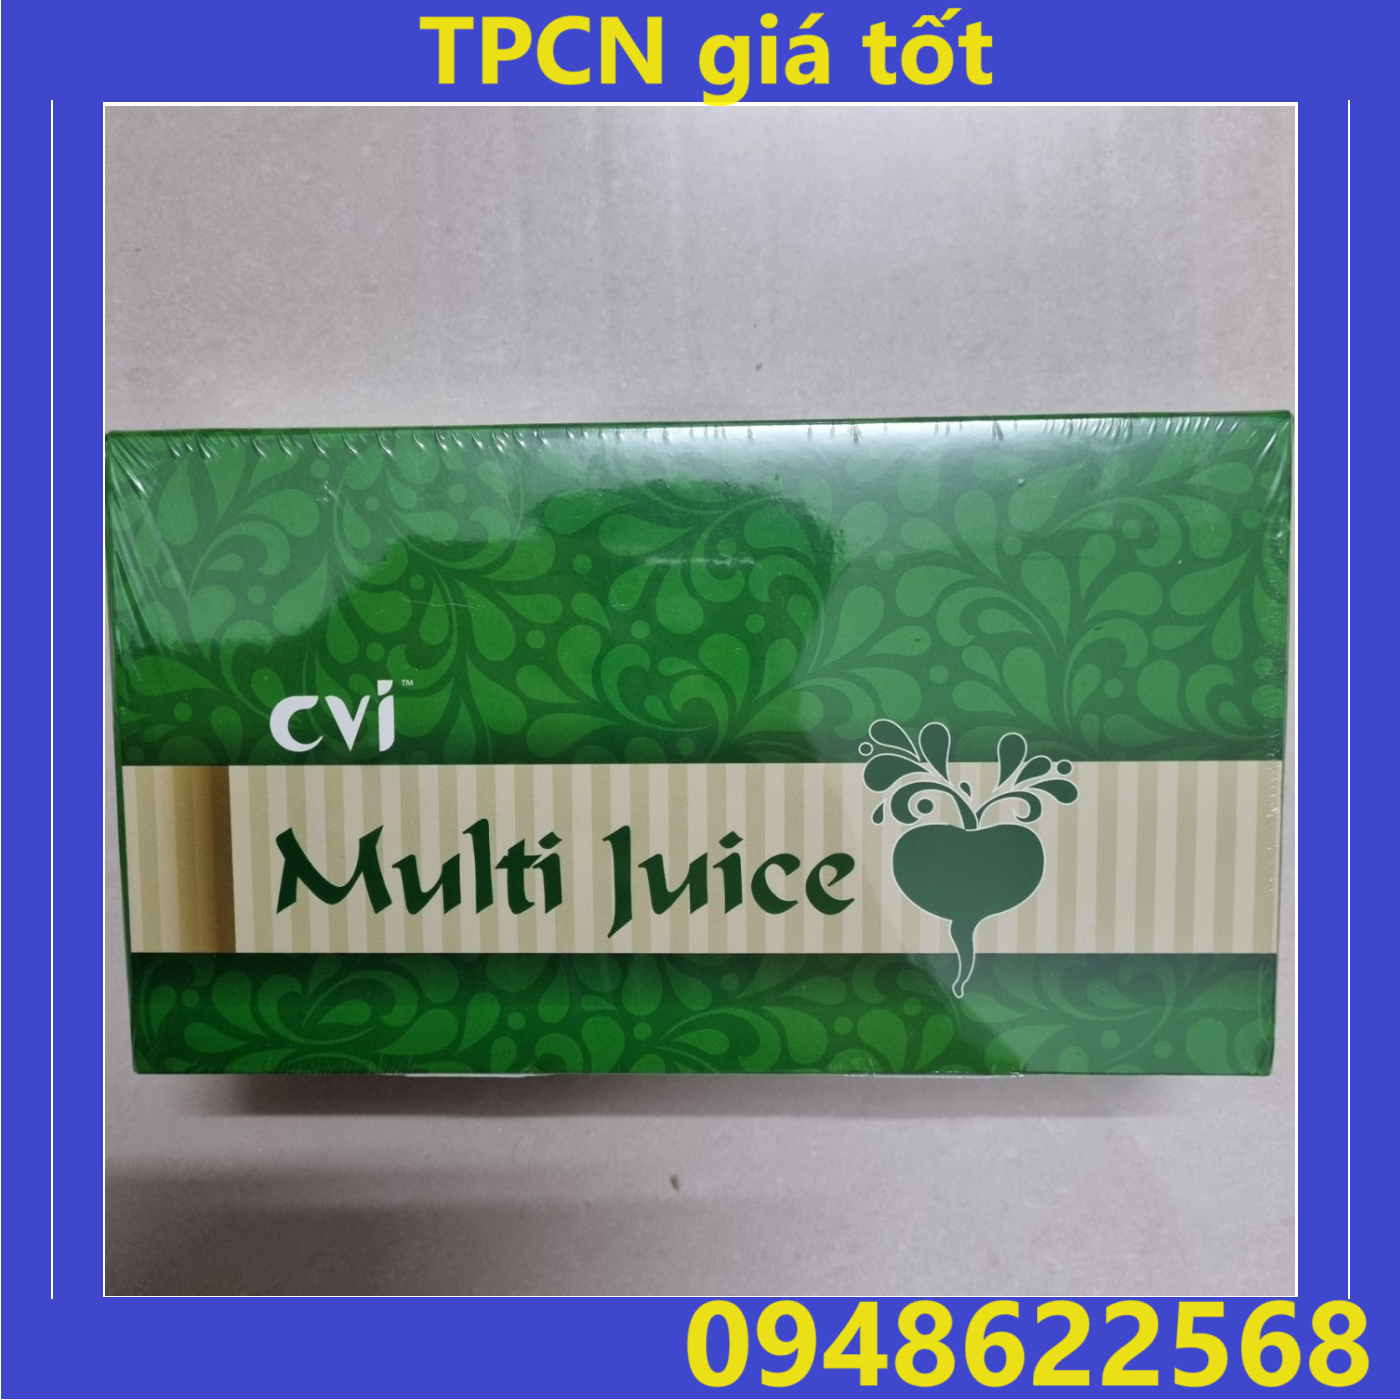 [Có bán sỉ] Multi Juice xanh - Nhập khẩu Malaysia ( 1 hộp = 30 gói )